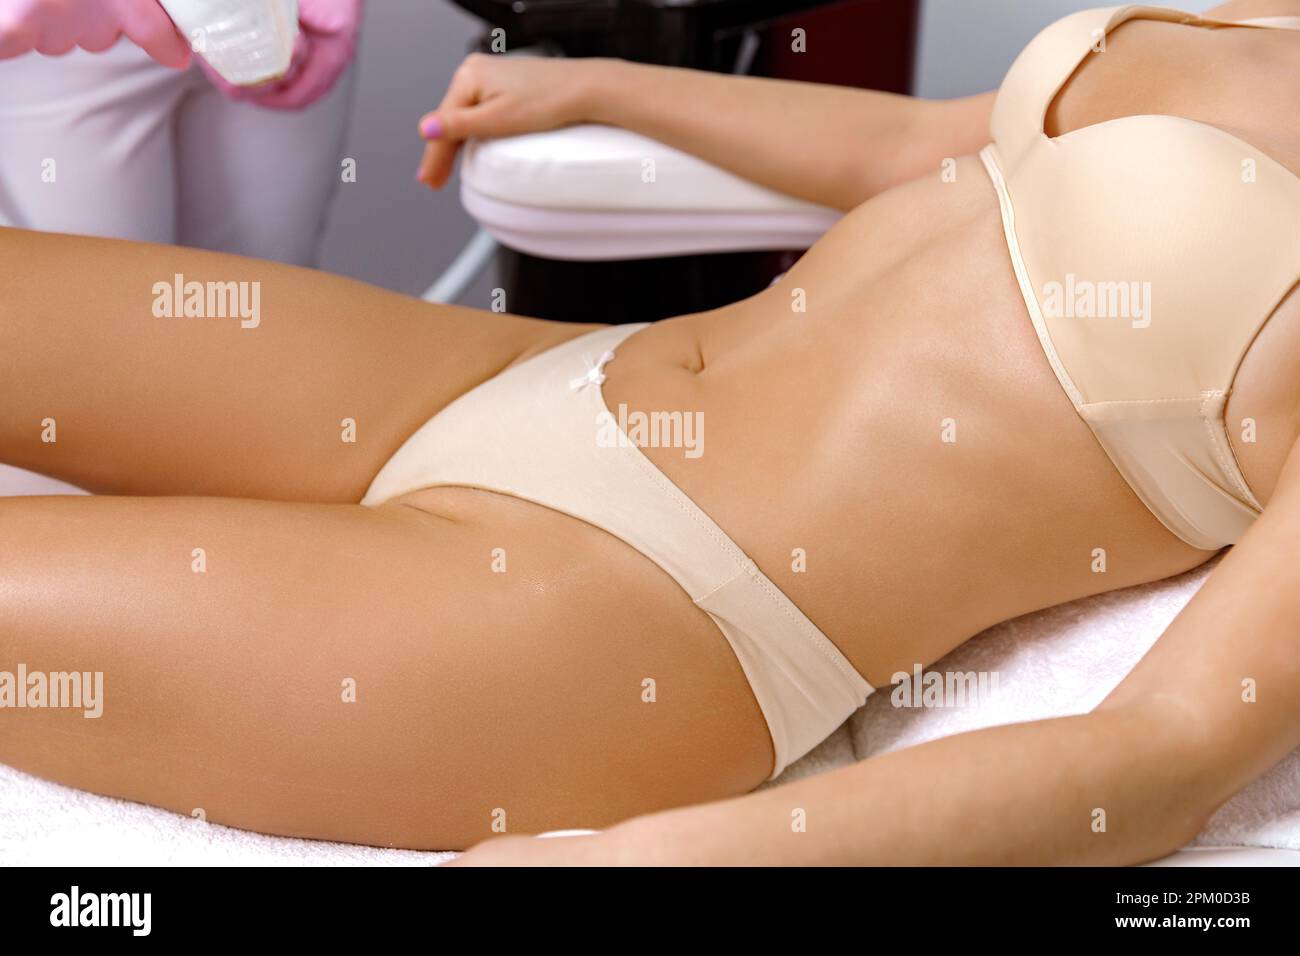 spa massage disposal g string bikini